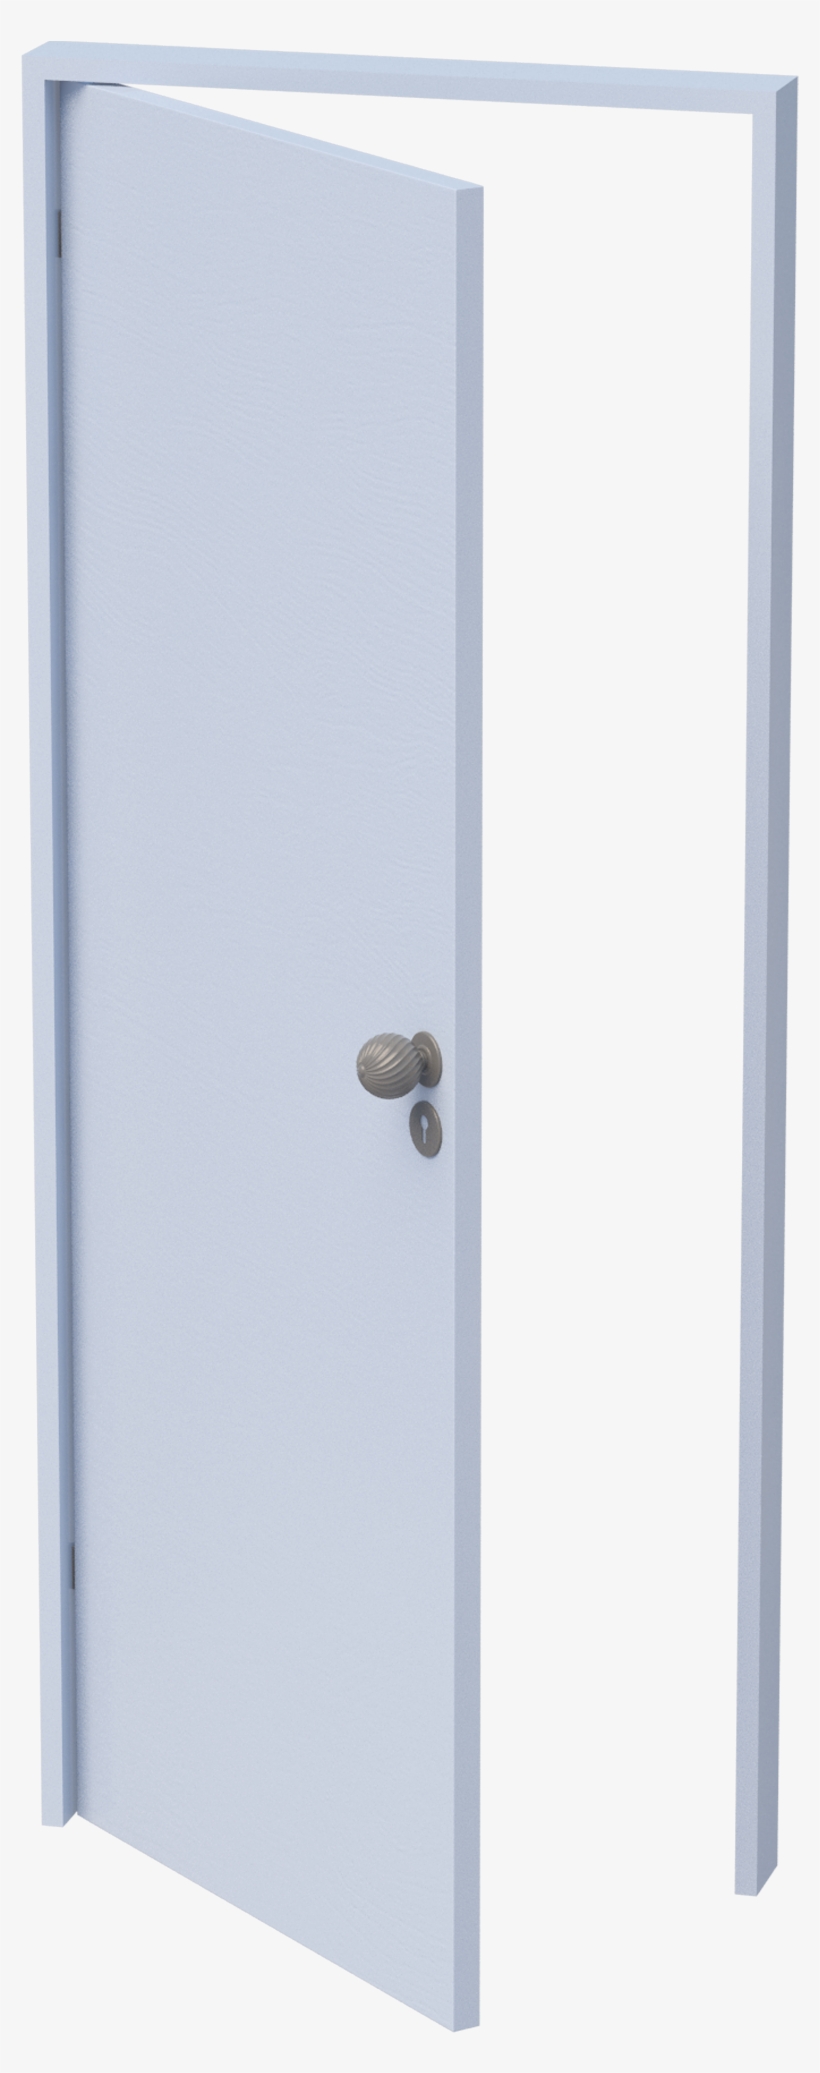 Pvc Doors - Home Door, transparent png #8325638